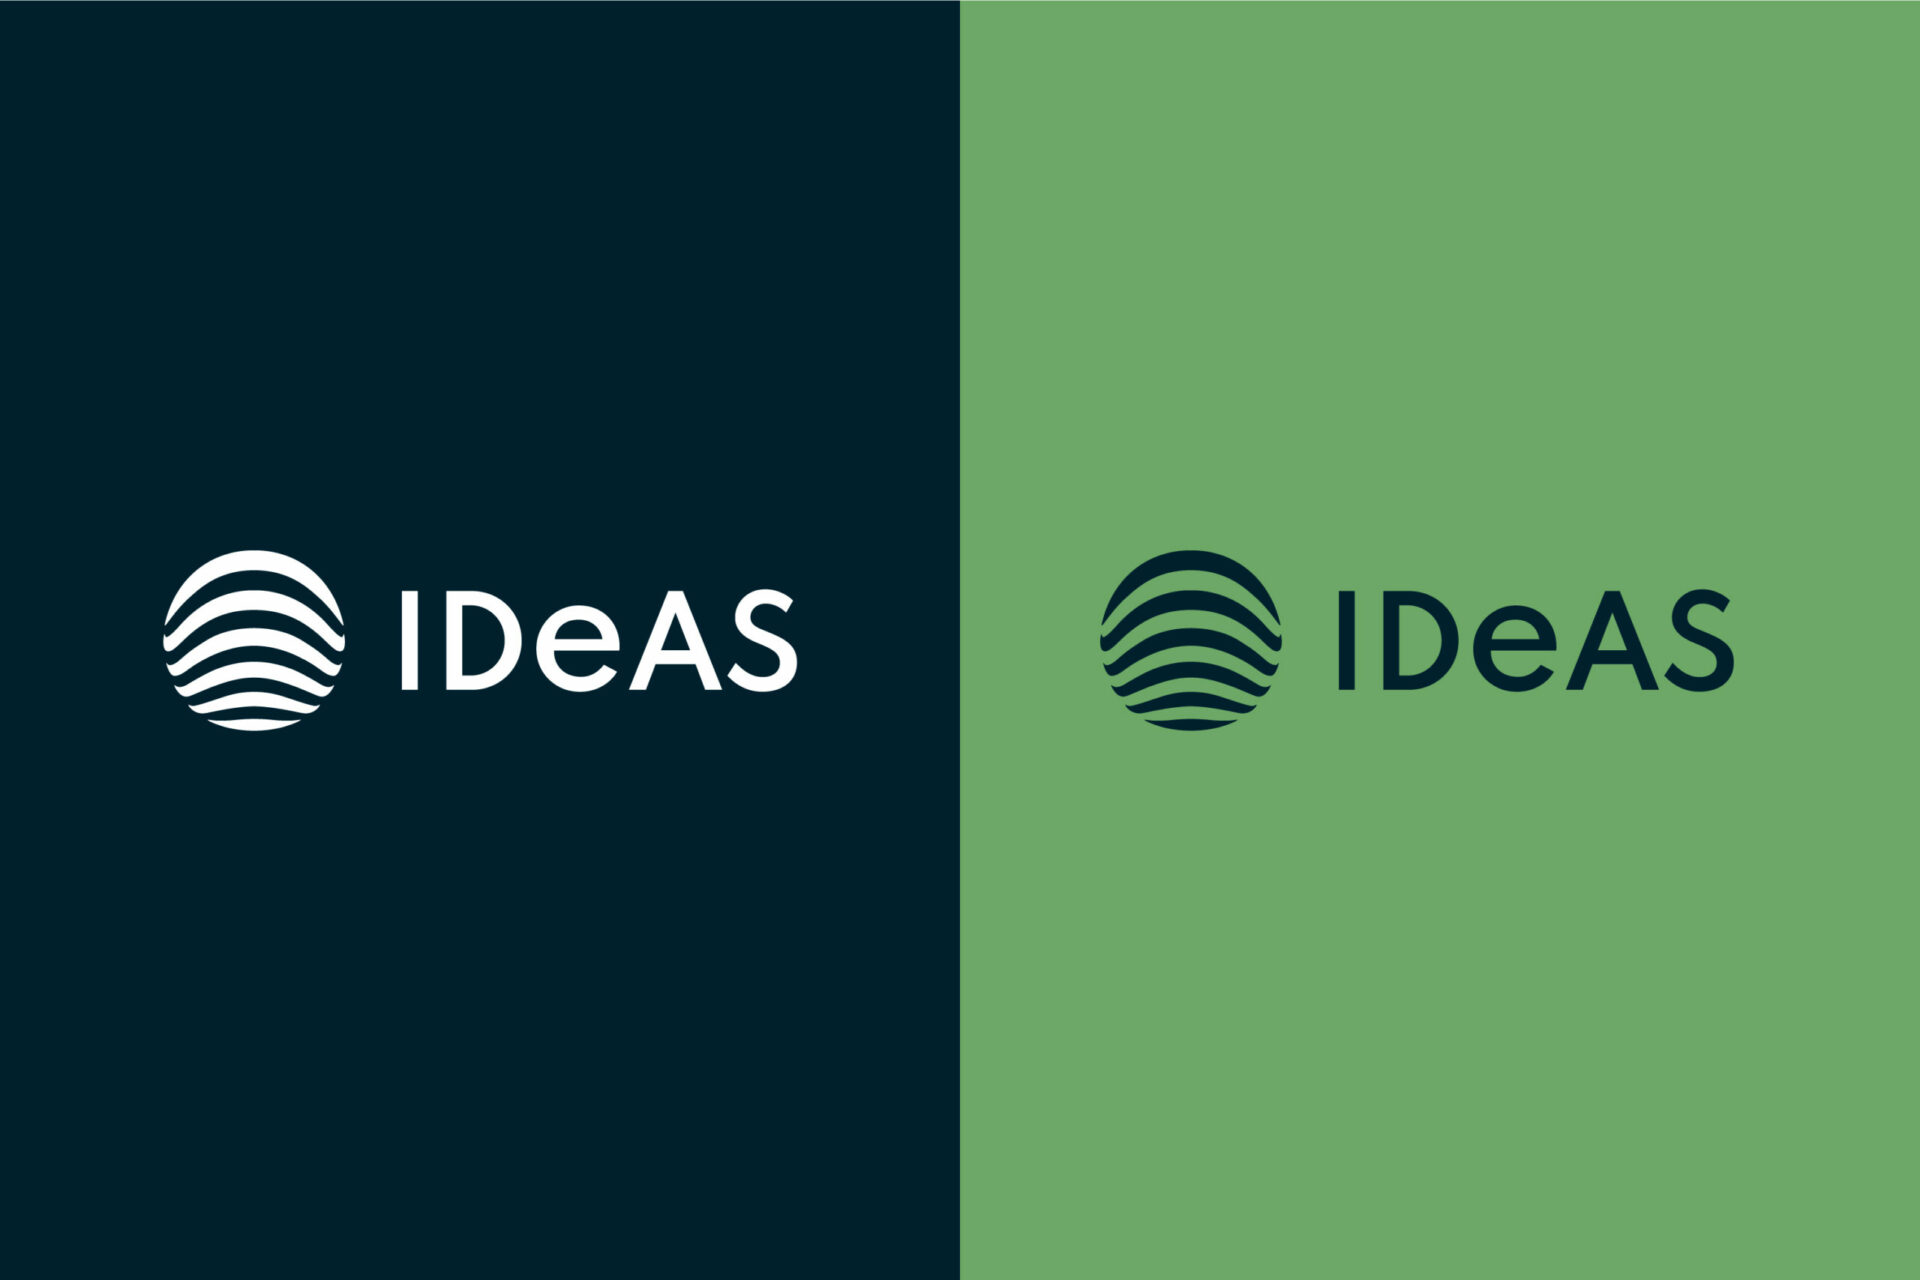 Zwei hochformatige IDeAS Logos. Ein weißes Logo auf dunkelblauem Hintergrund und ein zweites blaues Logo auf grünem Hintergrund.